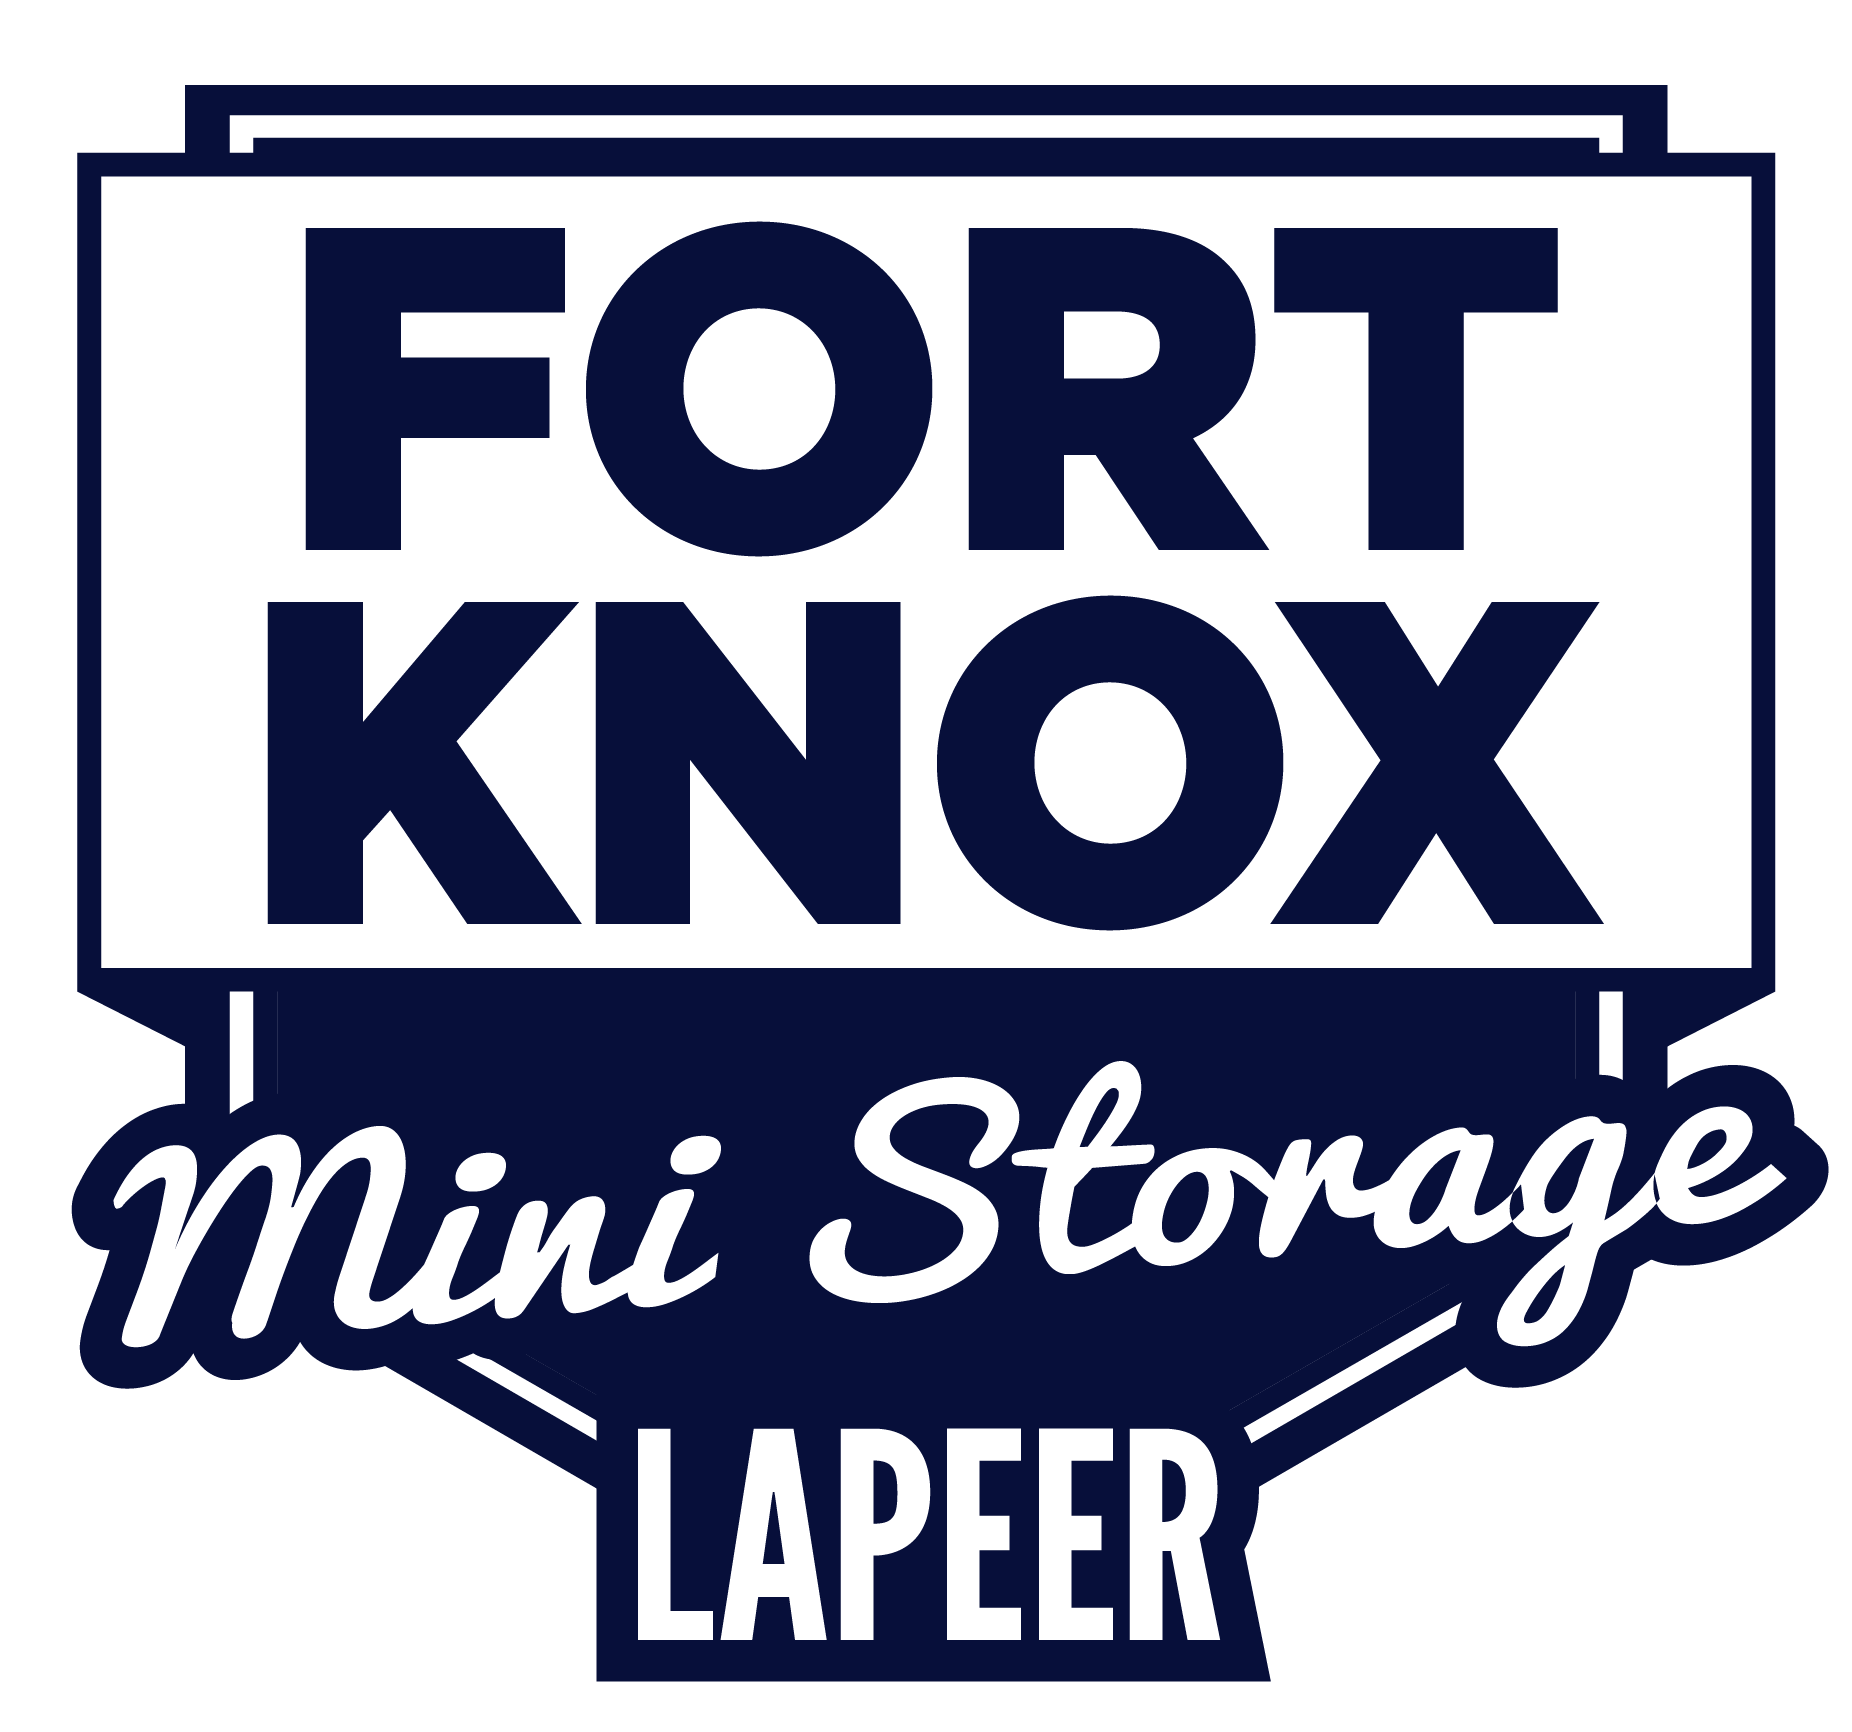 Fort Knox Lapeer